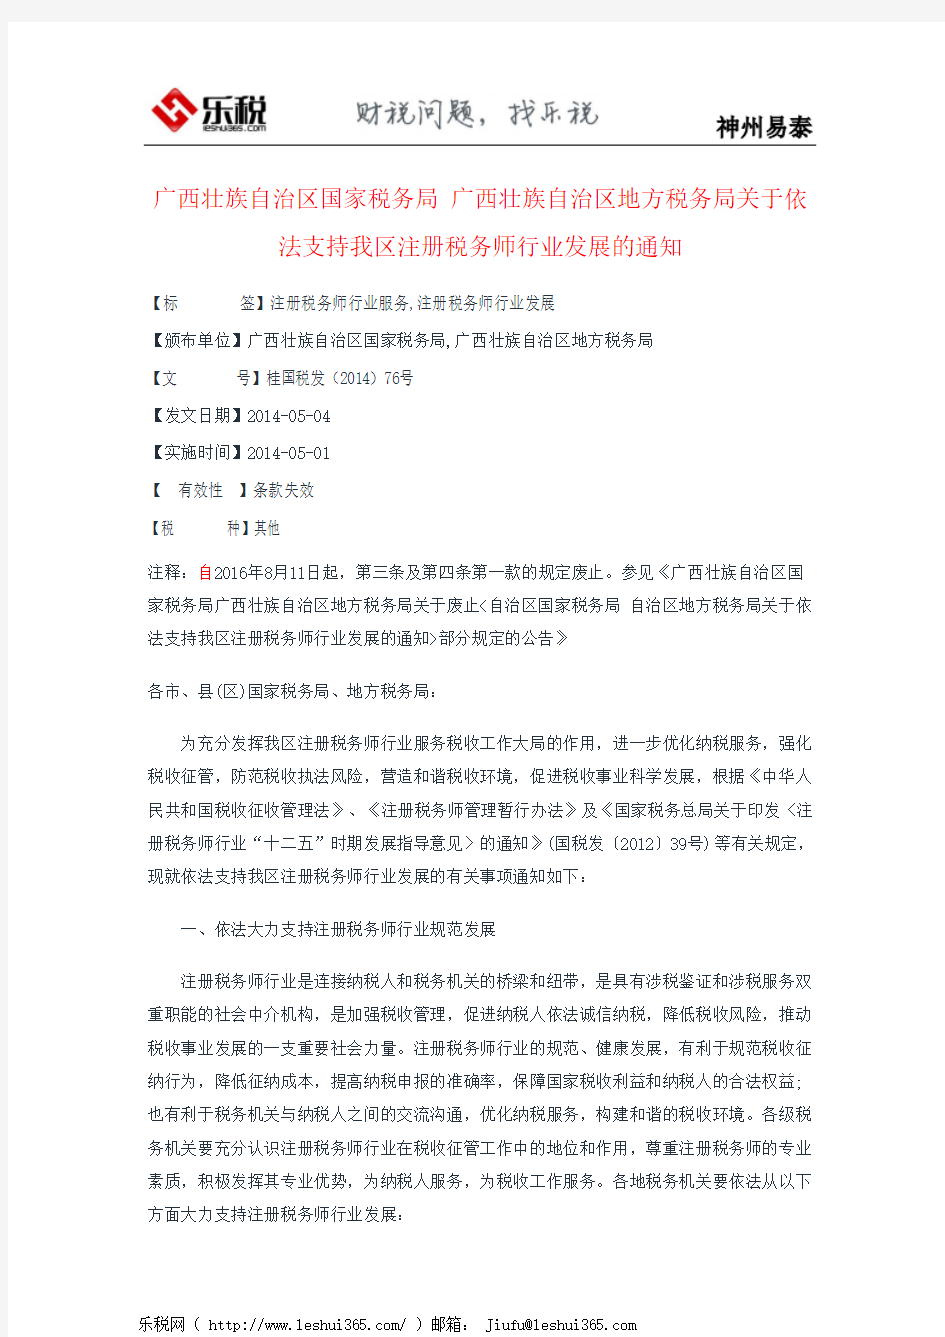 广西壮族自治区国家税务局 广西壮族自治区地方税务局关于依法支